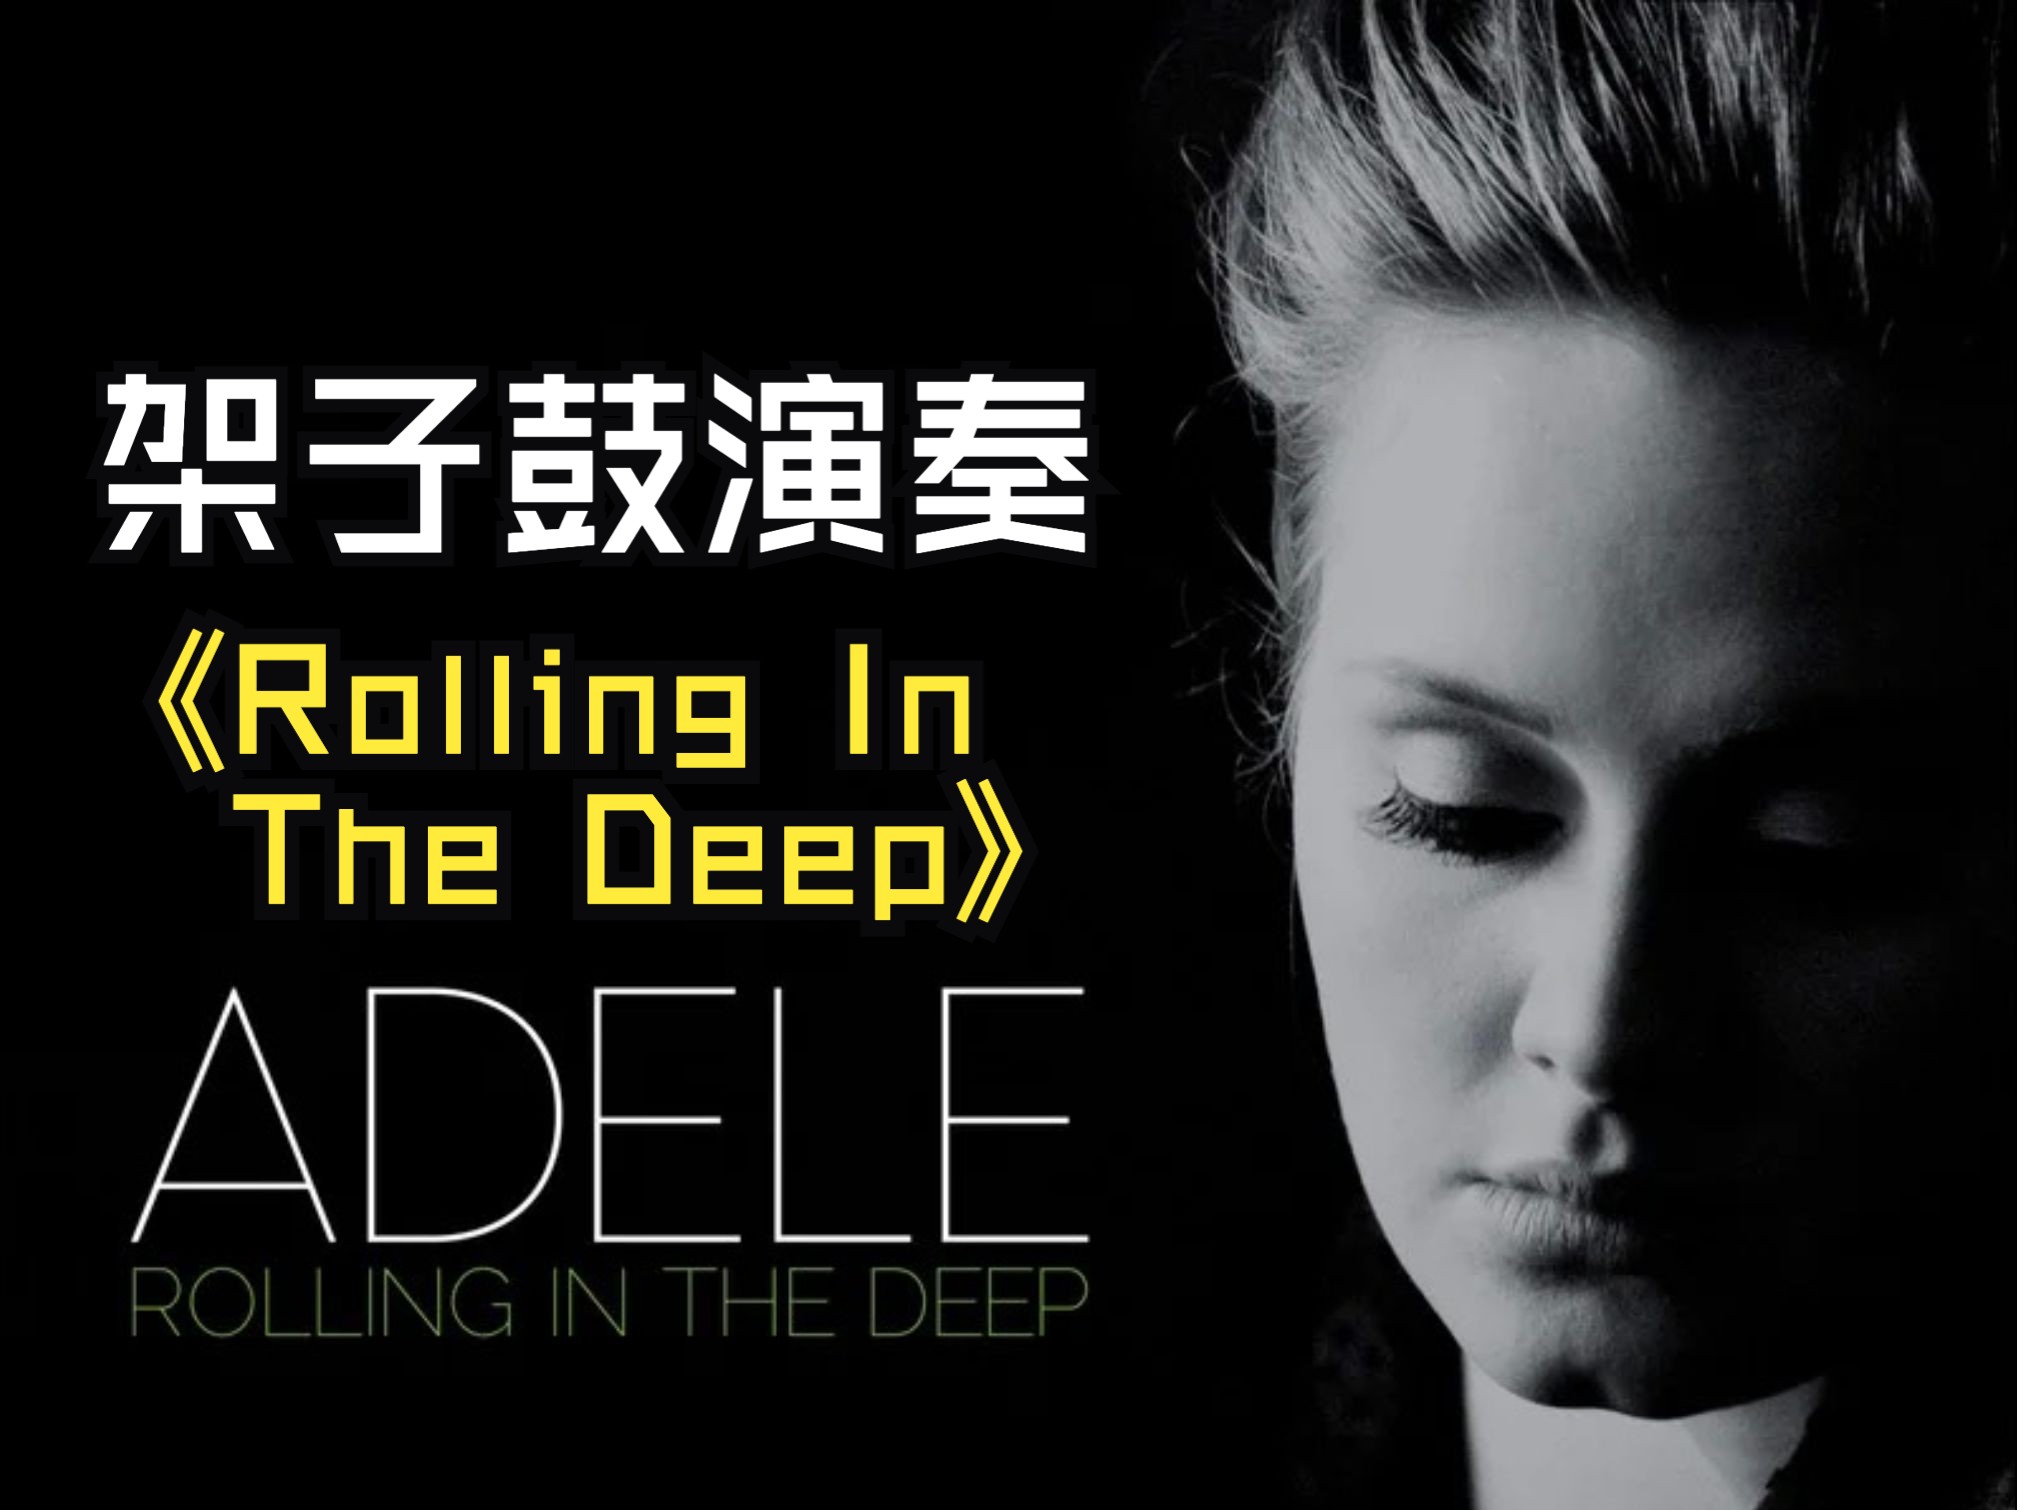 [图]Adele「Rolling In The Deep」-架子鼓演奏